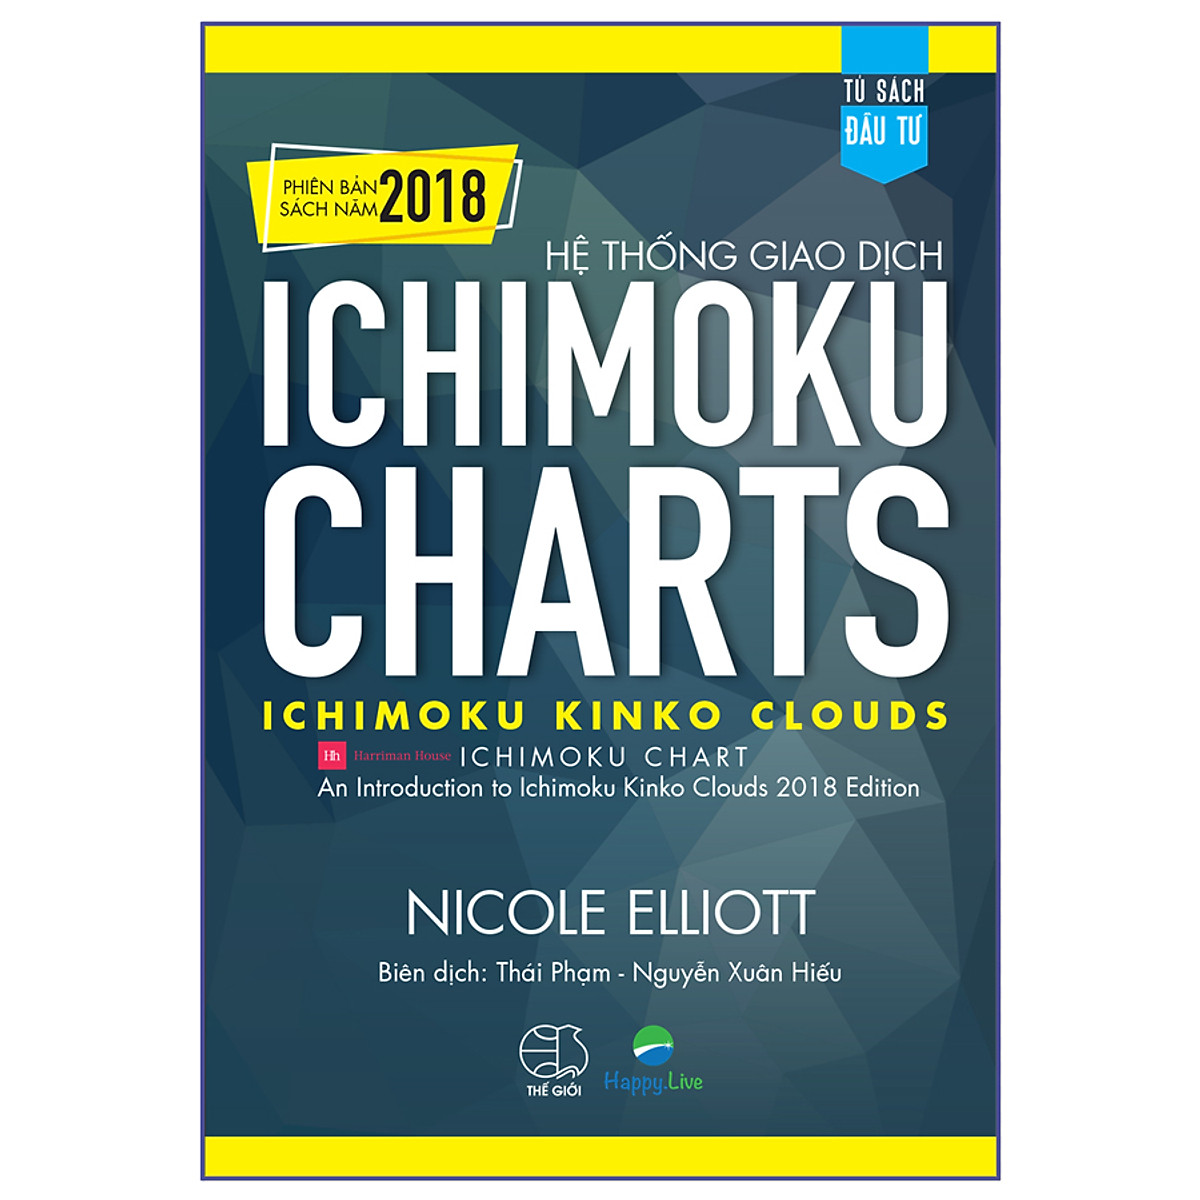 Hệ thống giao dịch Ichimoku Charts - Ichimoku Kinko Clouds (Phiên bản sách năm 2018)